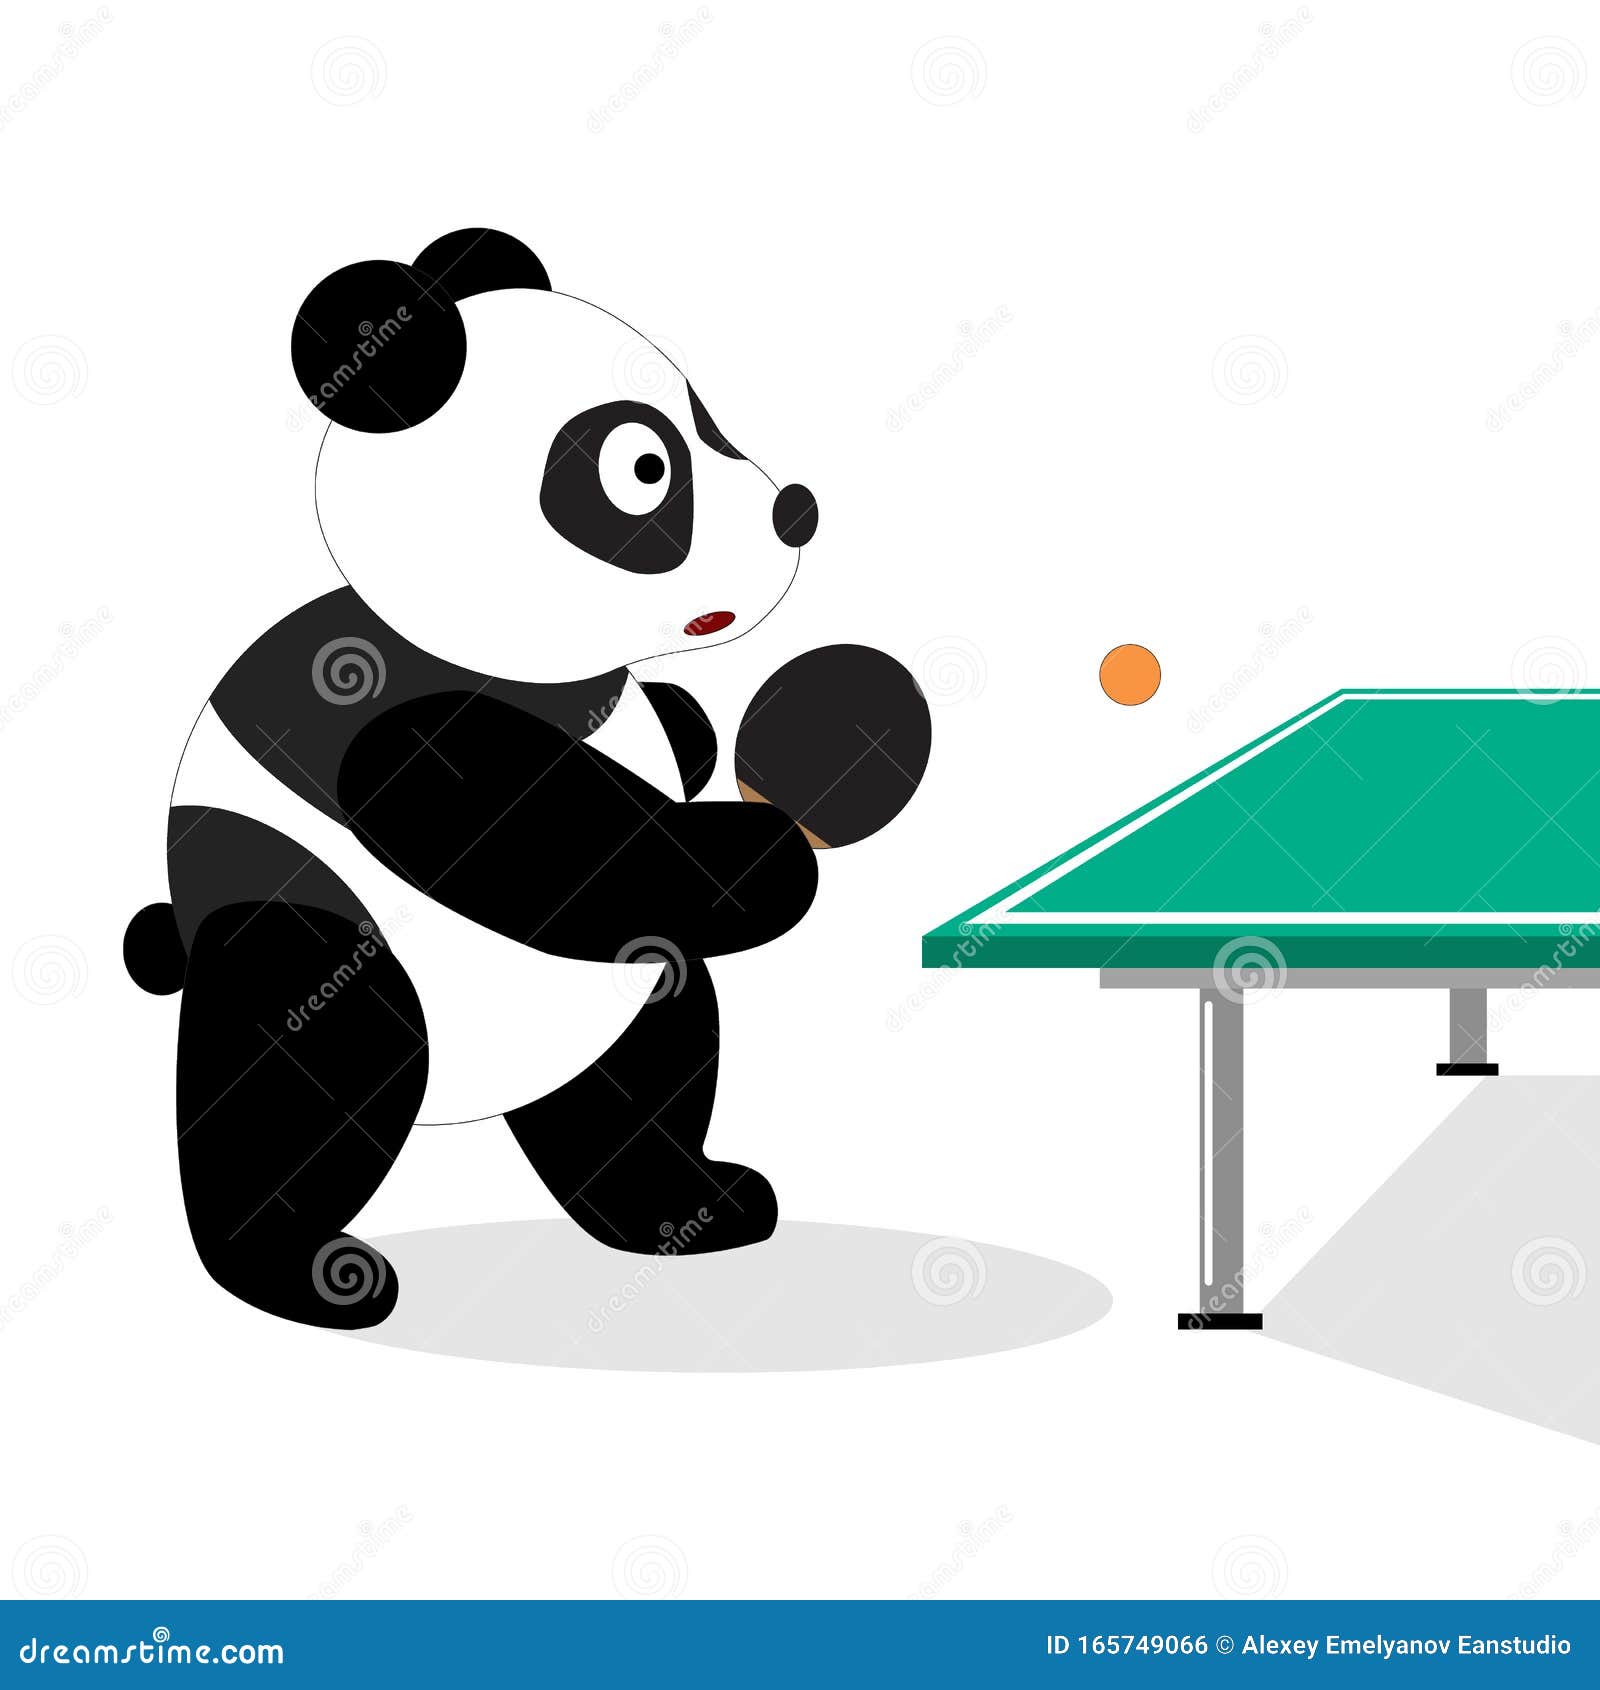 Панда настольный теннис в контакте. Панда теннис. Панда играет. Мишка теннисист. Панда в Самаре пинг понг.